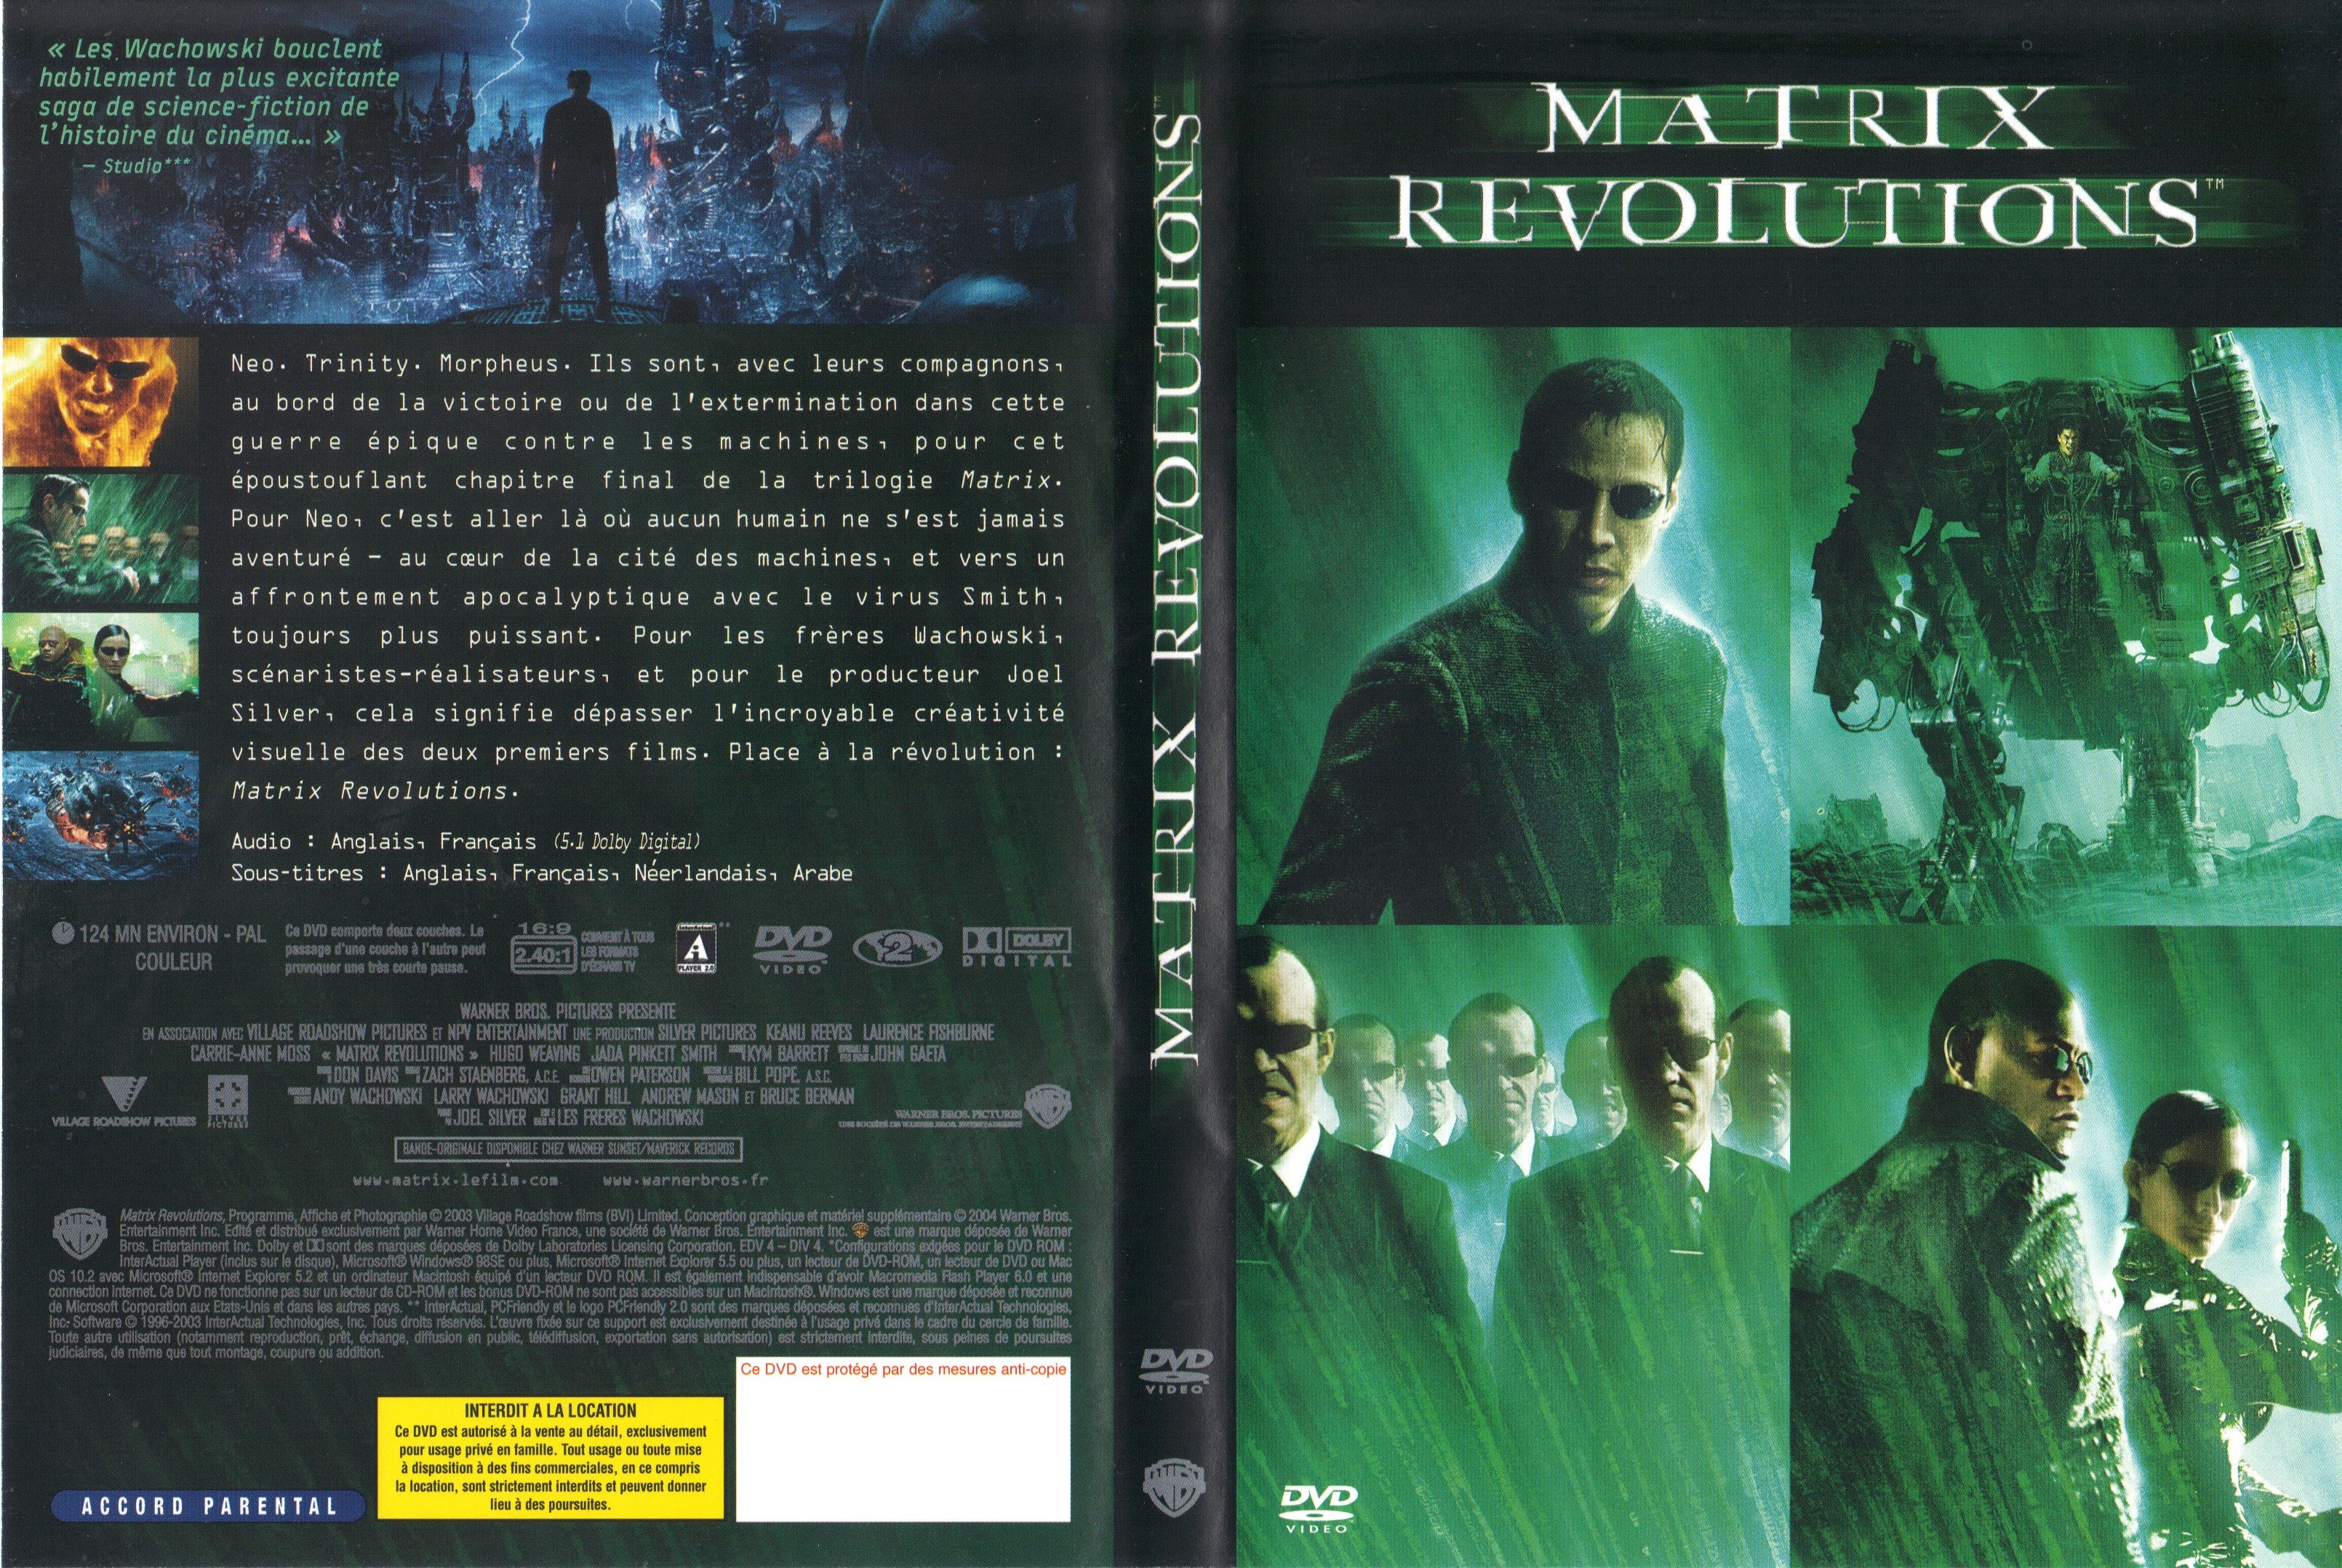 Jaquette DVD Matrix revolutions v2